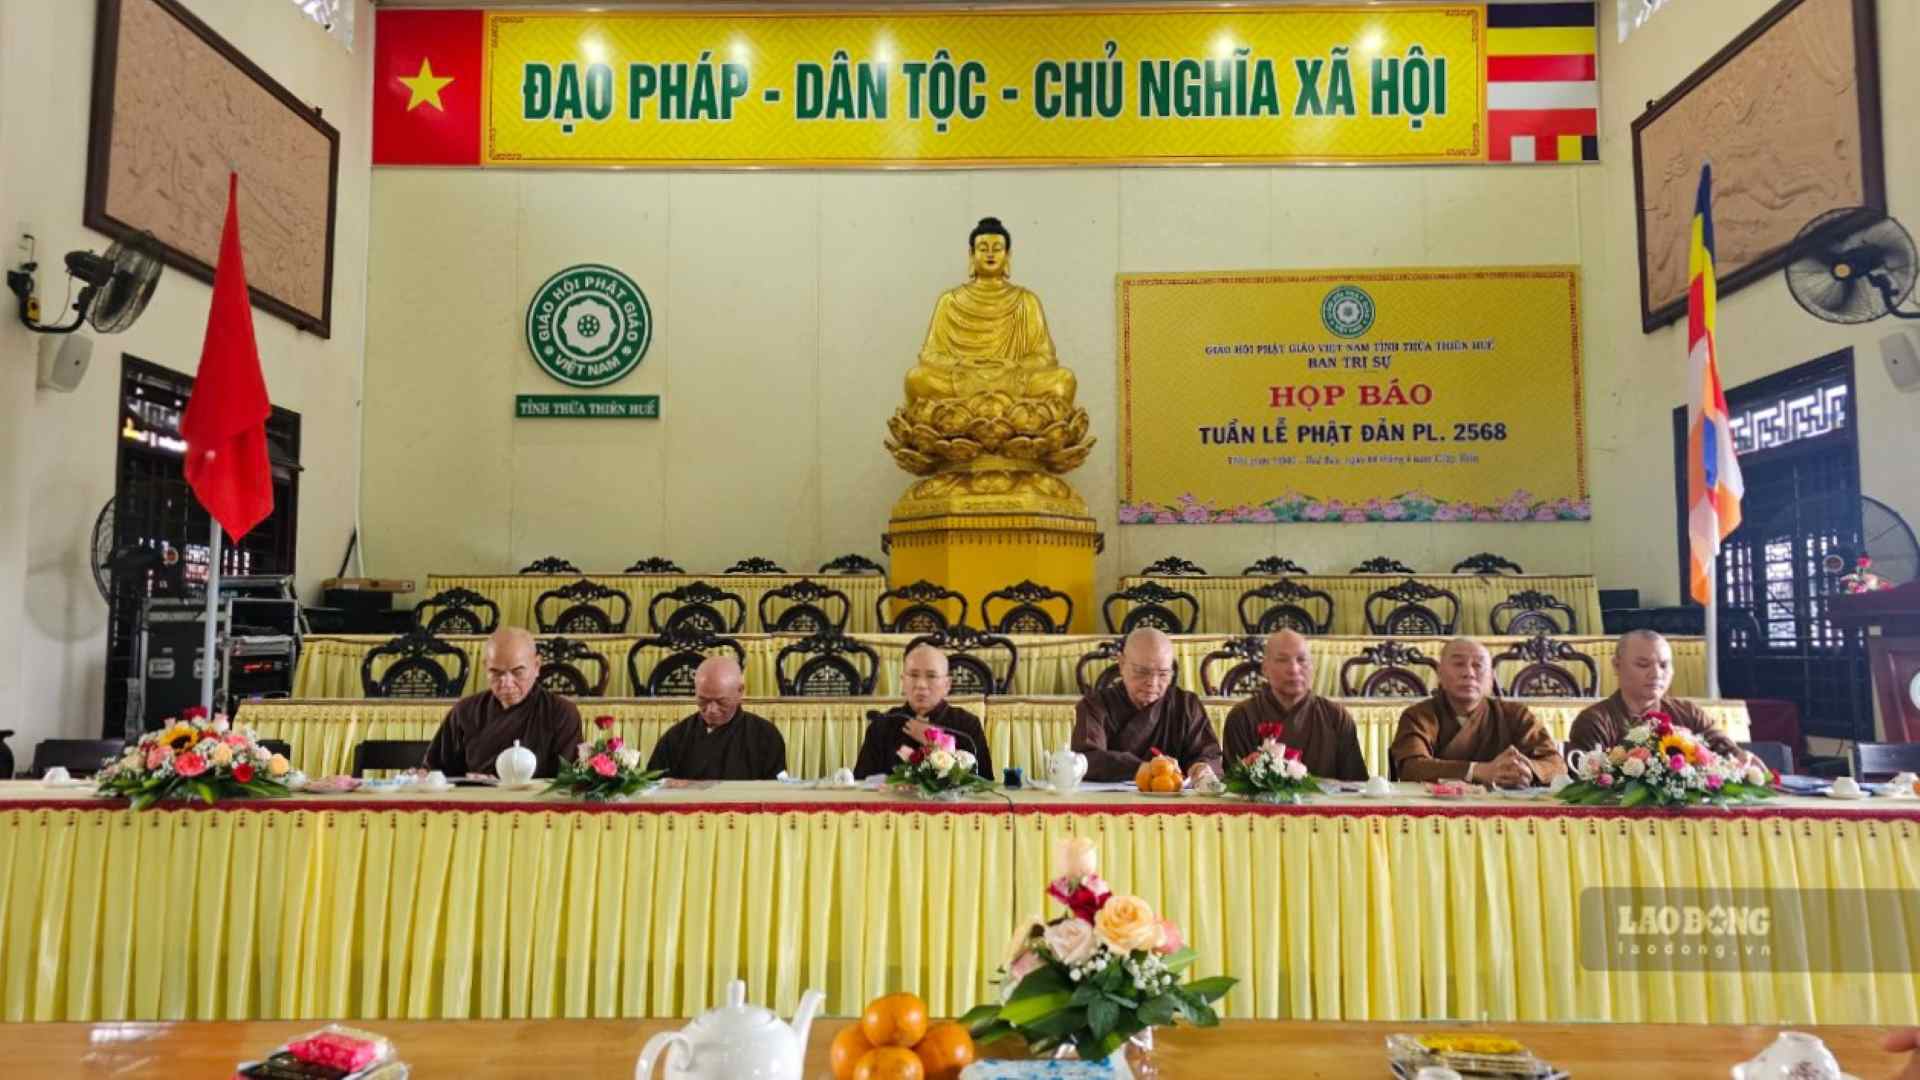 Giáo hội Phật giáo Việt Nam tỉnh Thừa Thiên Huế tổ chức họp báo, chuẩn bị cho Tuần lễ Phật đản - PL 2568.